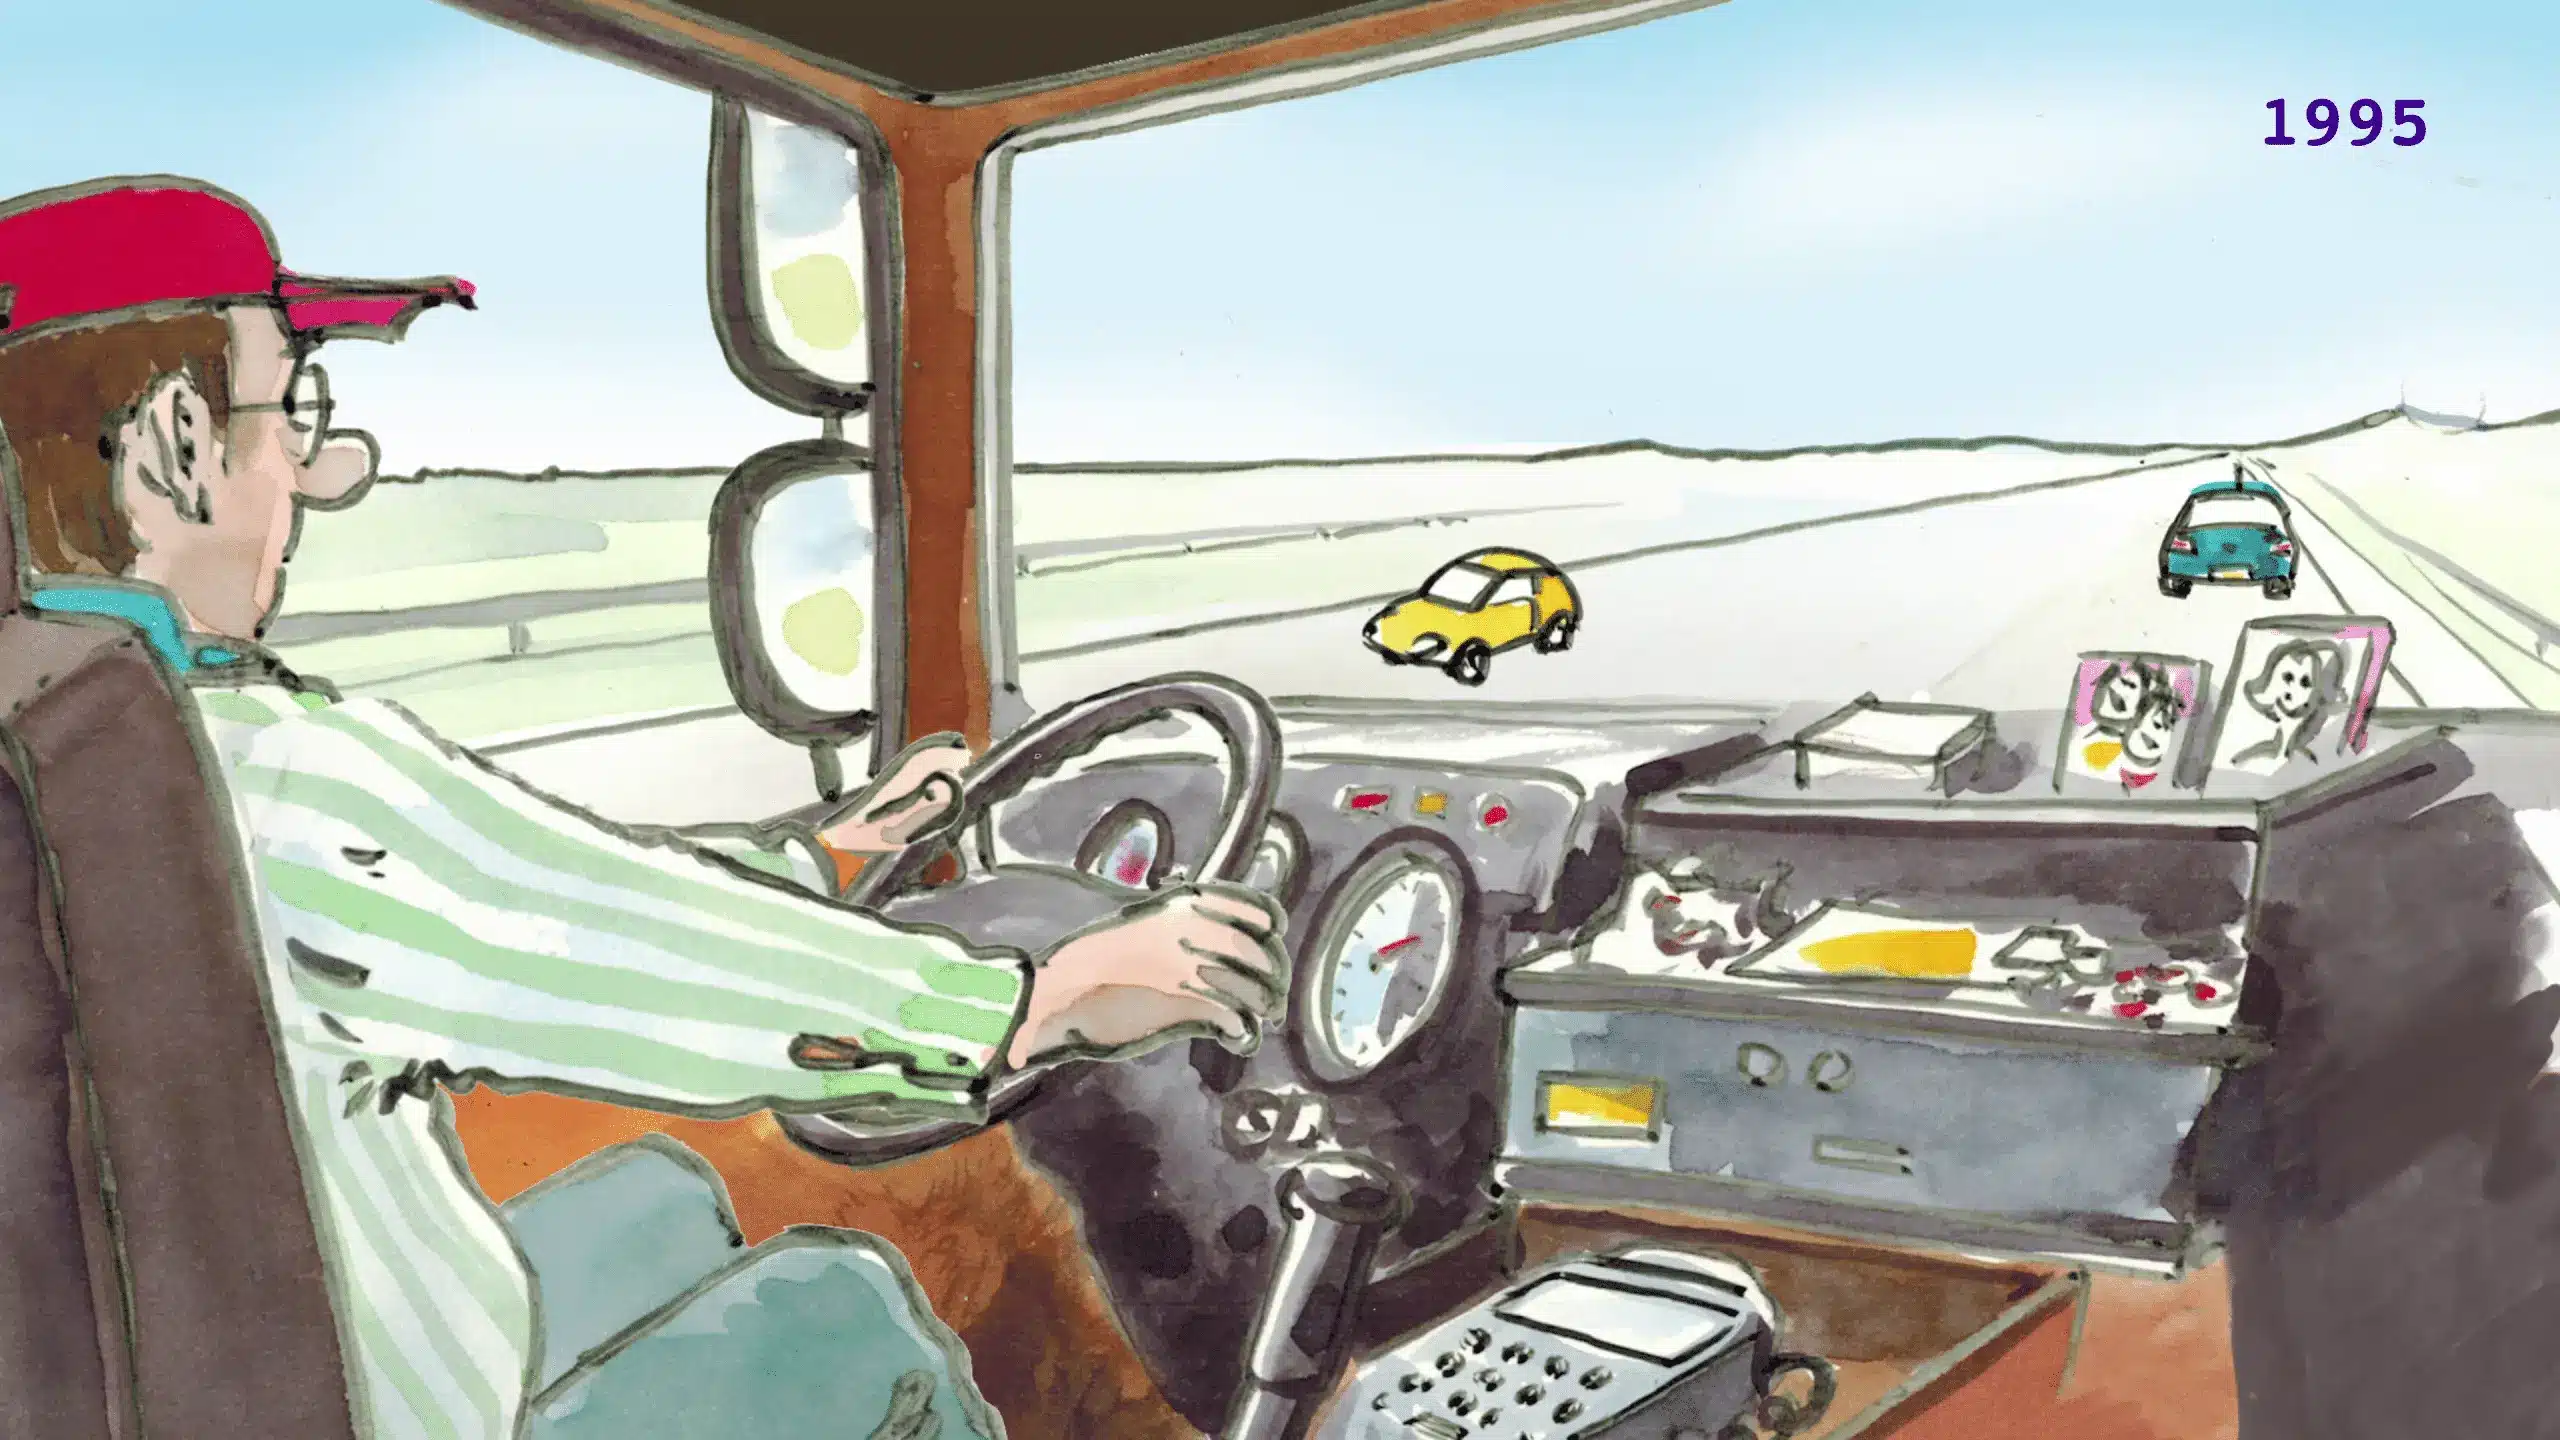 2D afbeelding in getekende stijl van een vrachtwagenchauffeur in zijn cabine die op de weg uitkijkt met daarop twee auto's